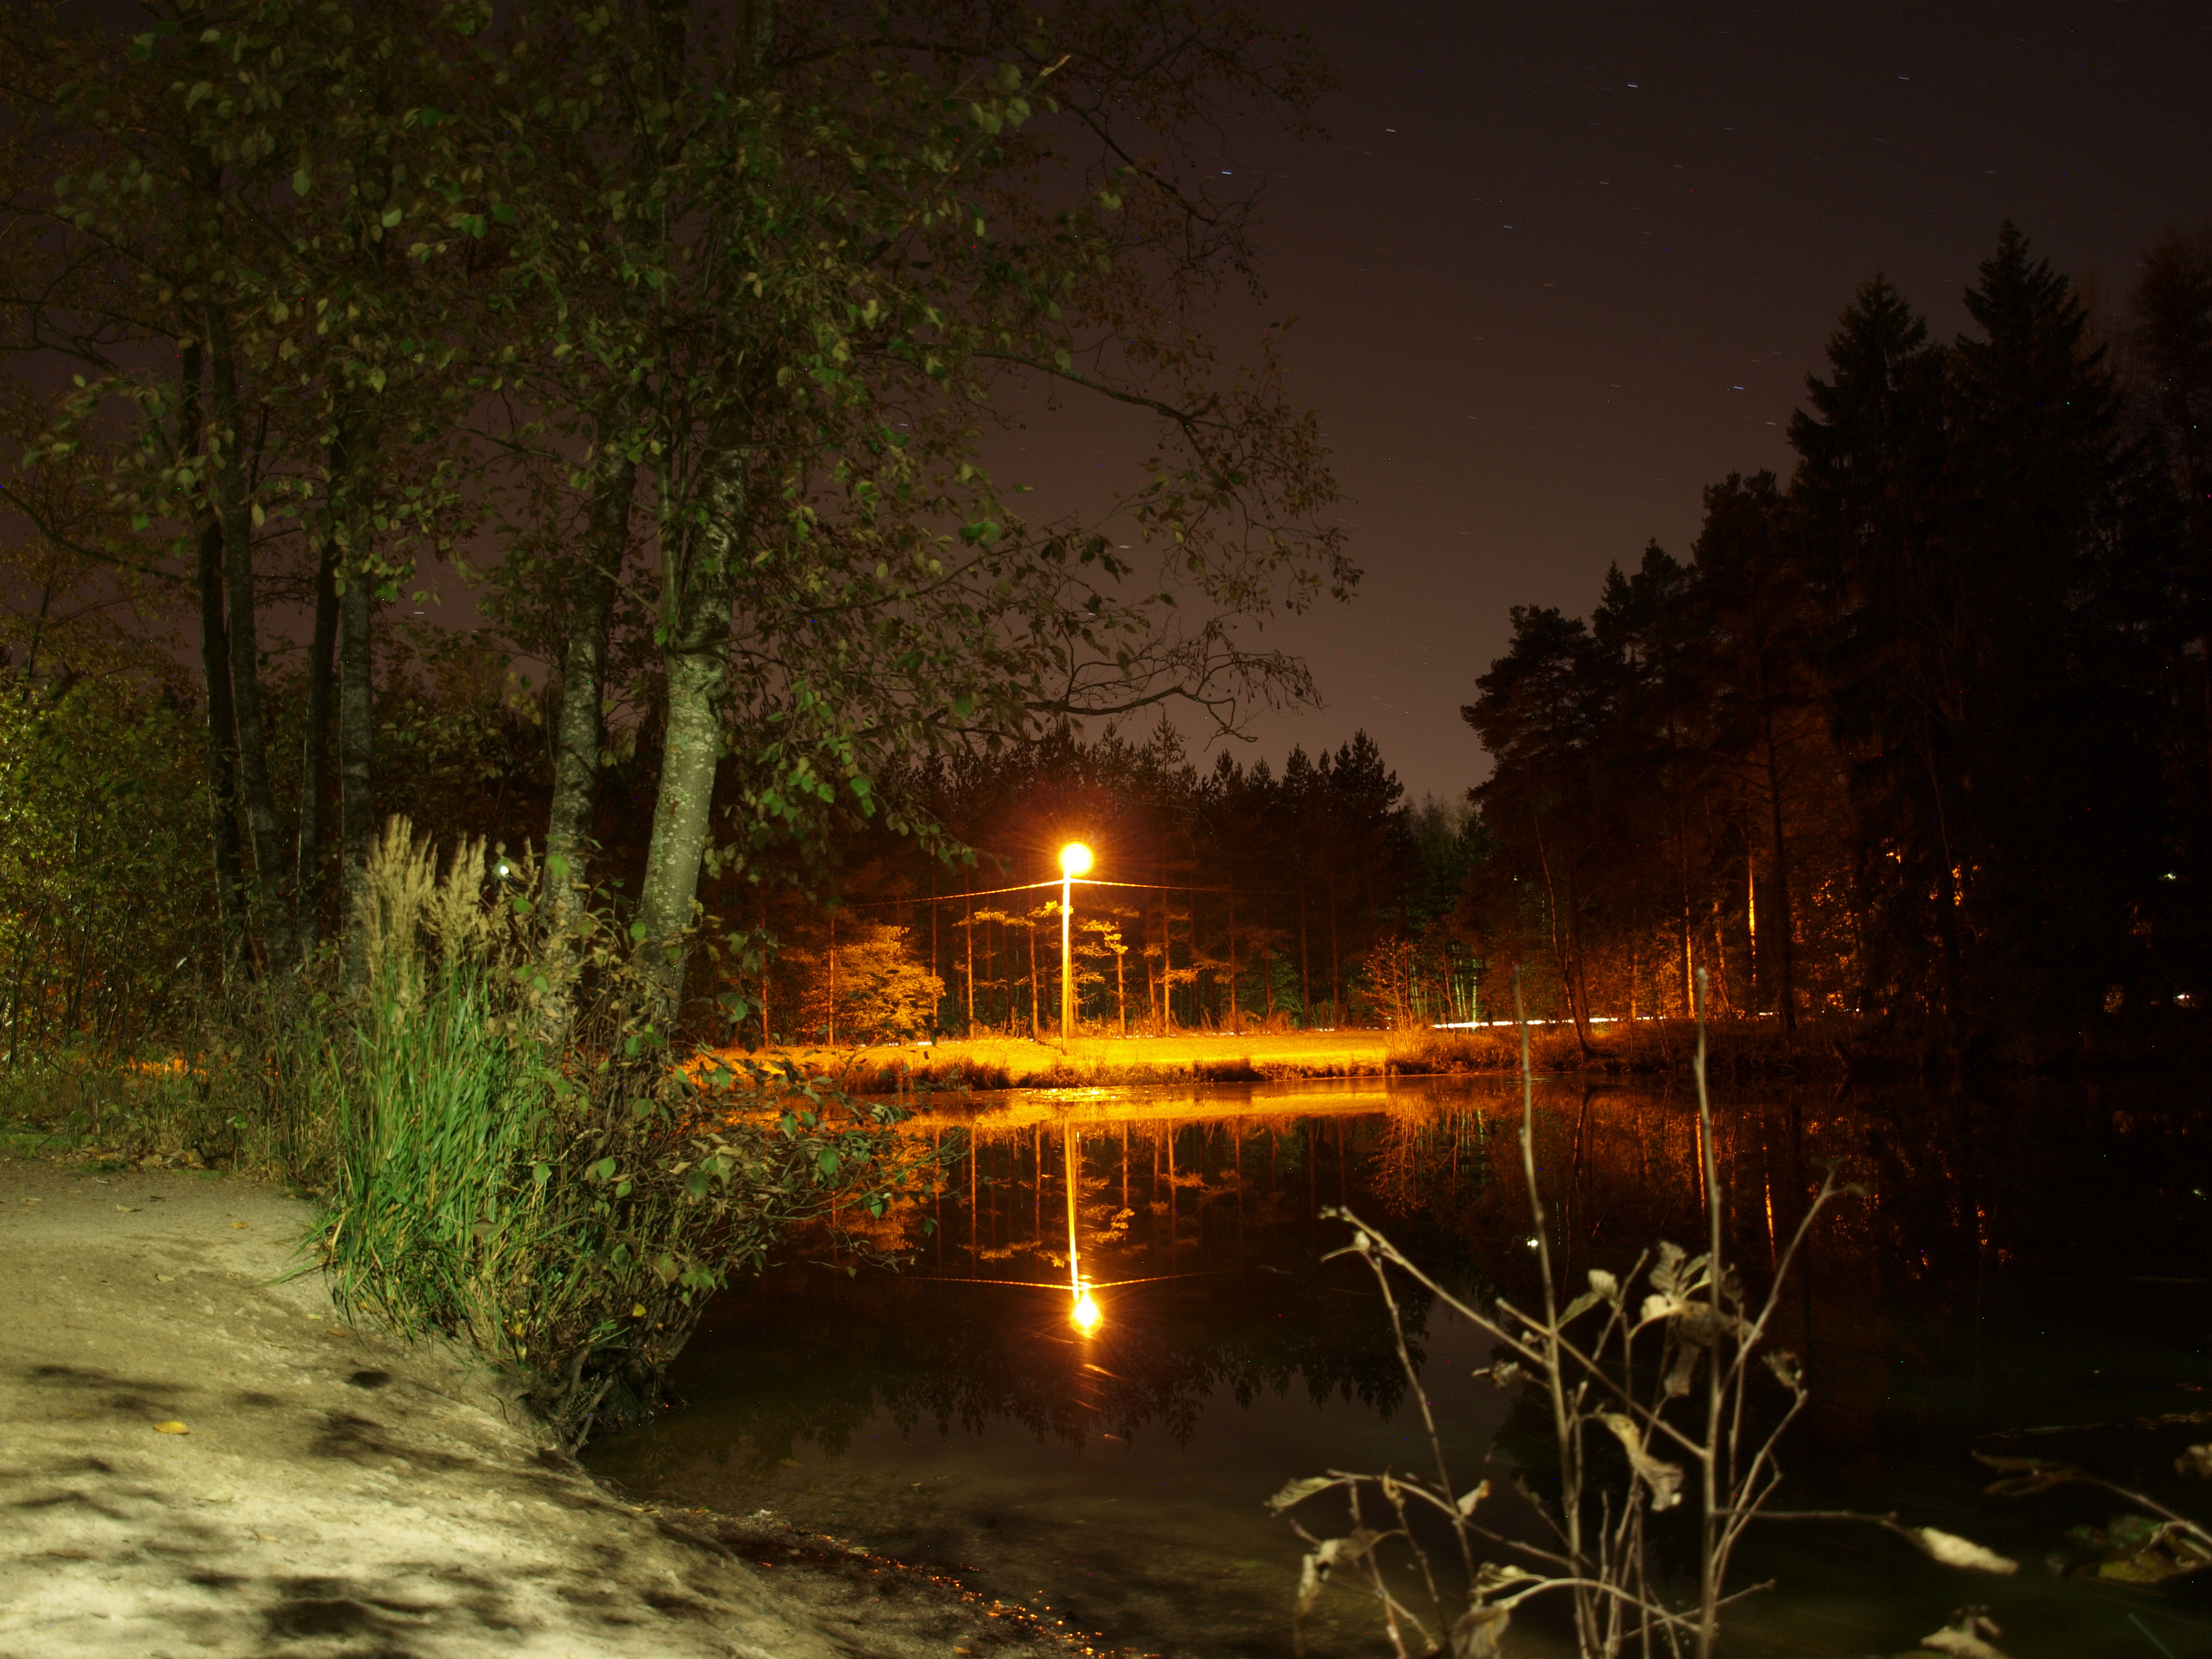 Lake at night photo